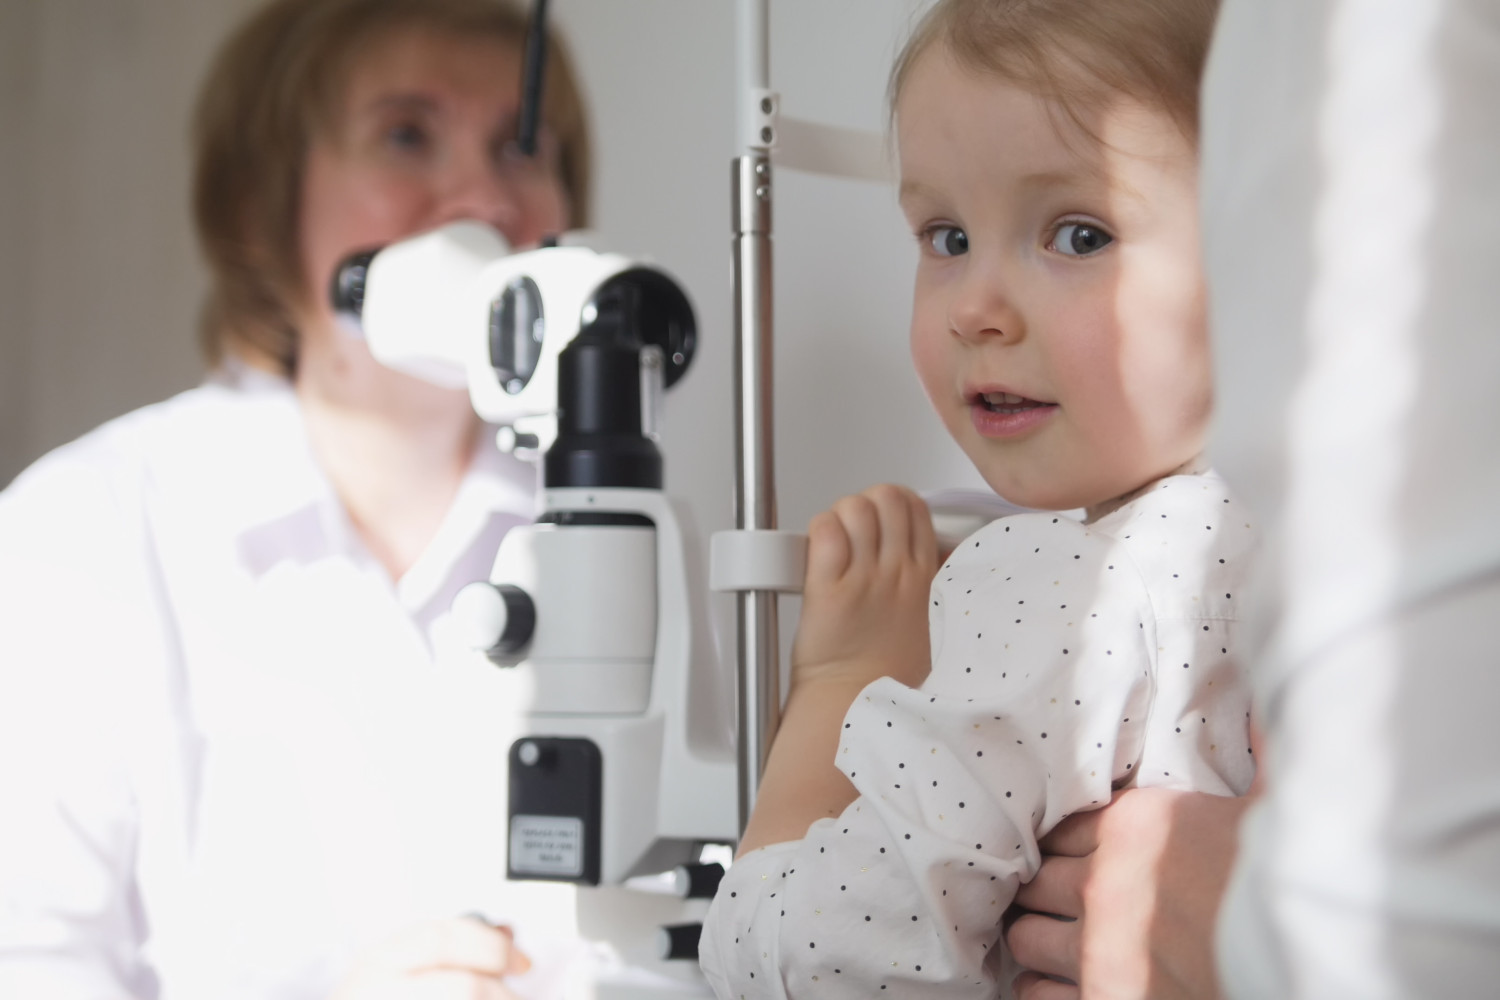 Коррекция астигматизма, атропин и эффективность аппаратов: главные вопросы к детскому офтальмологу